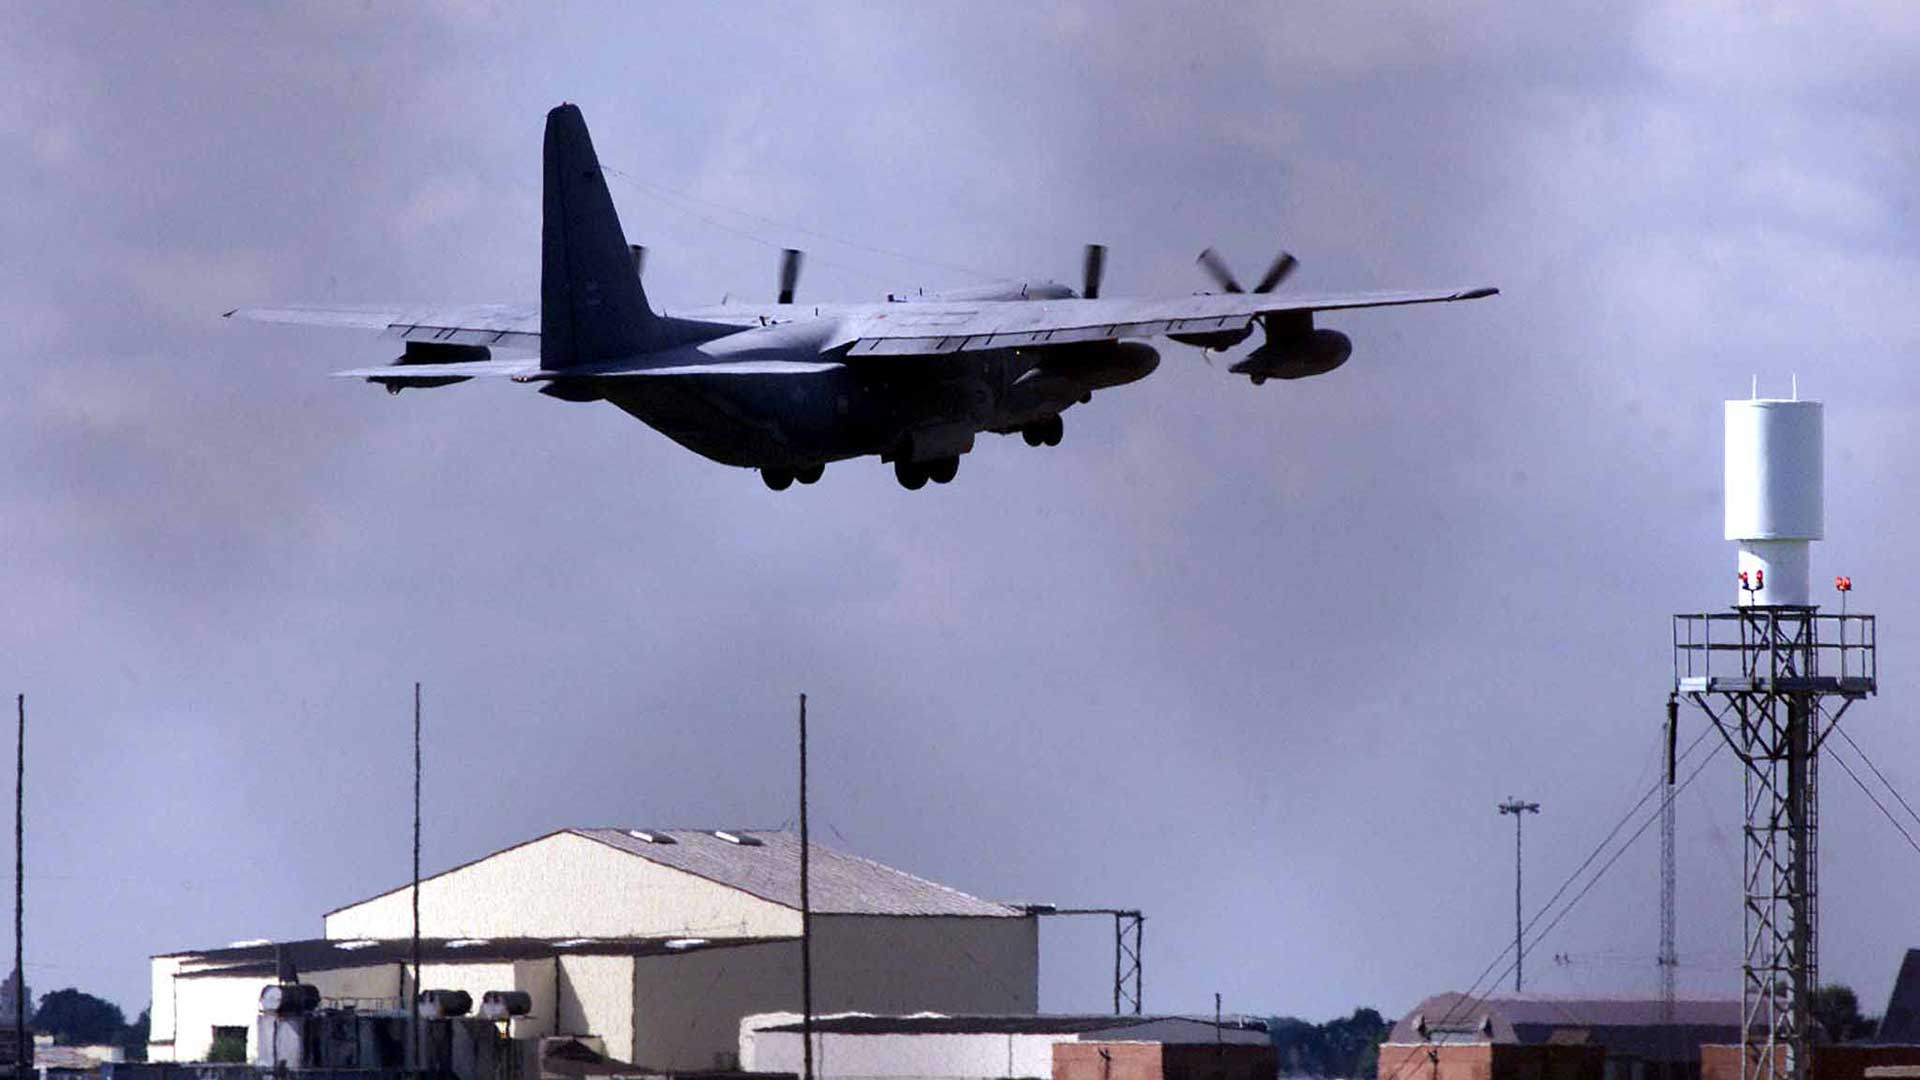 Cierran la base aérea británica de Mildenhall por un incidente de seguridad